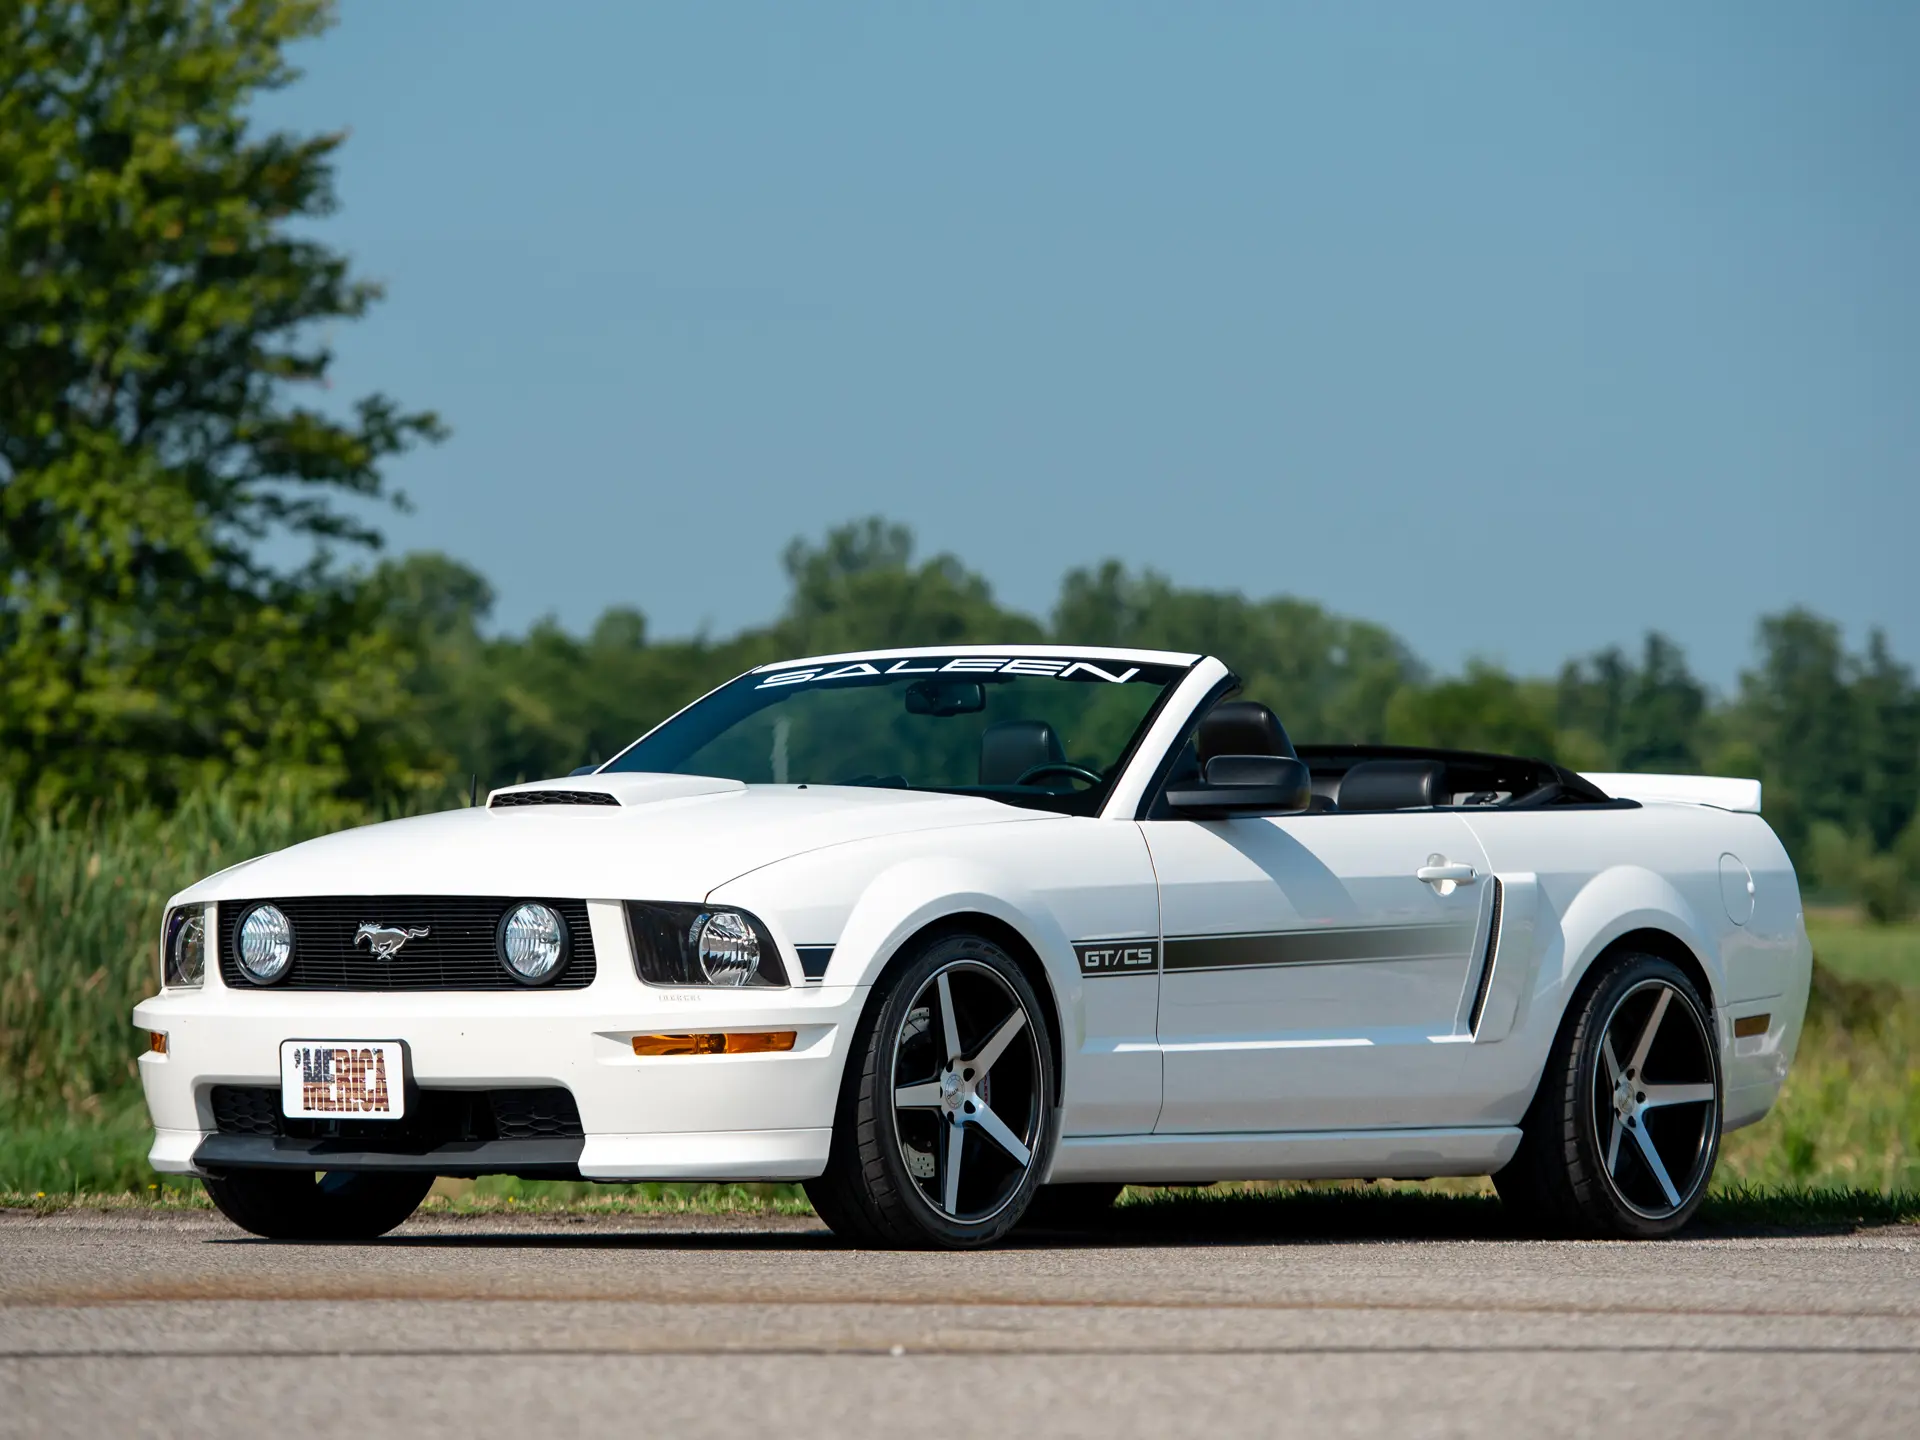 2007 Ford Mustang GT/CS Saleen | Auburn Fall 2021 | RM Sotheby's